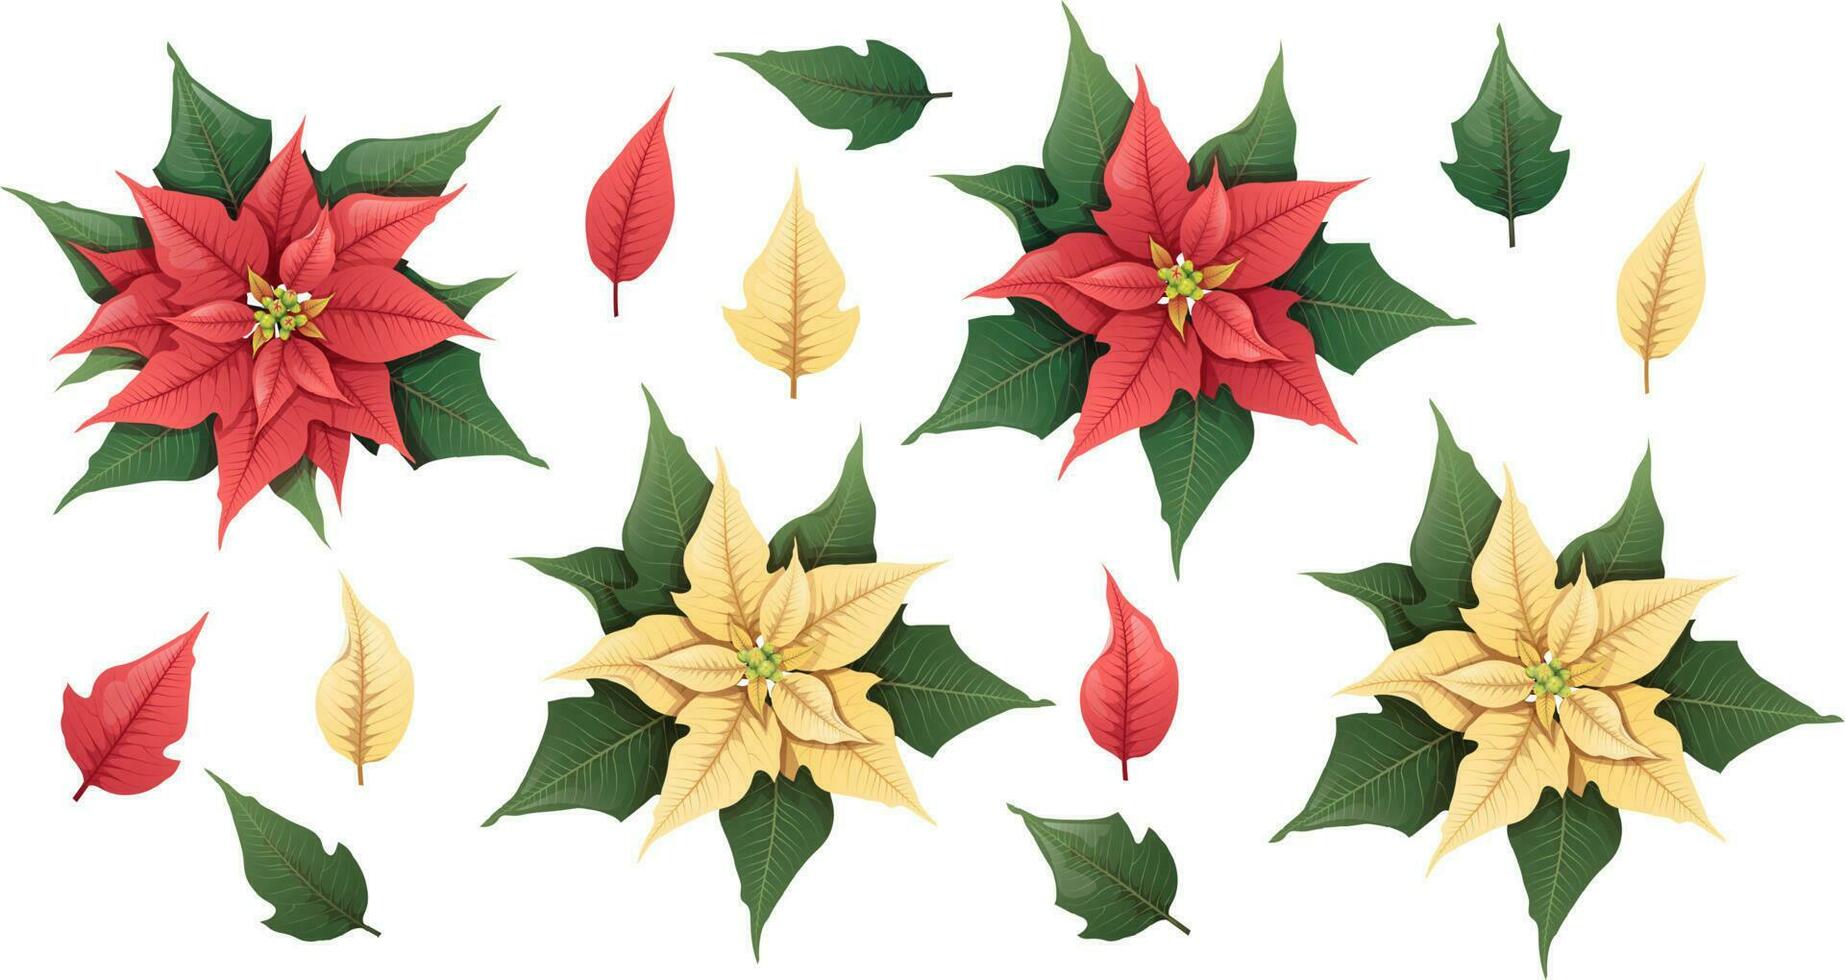 plano poinsétia para decoração desenho.vermelho e amarelo flores e folhas do uma Natal plantar para decoração em uma branco fundo. vetor feriado ilustração